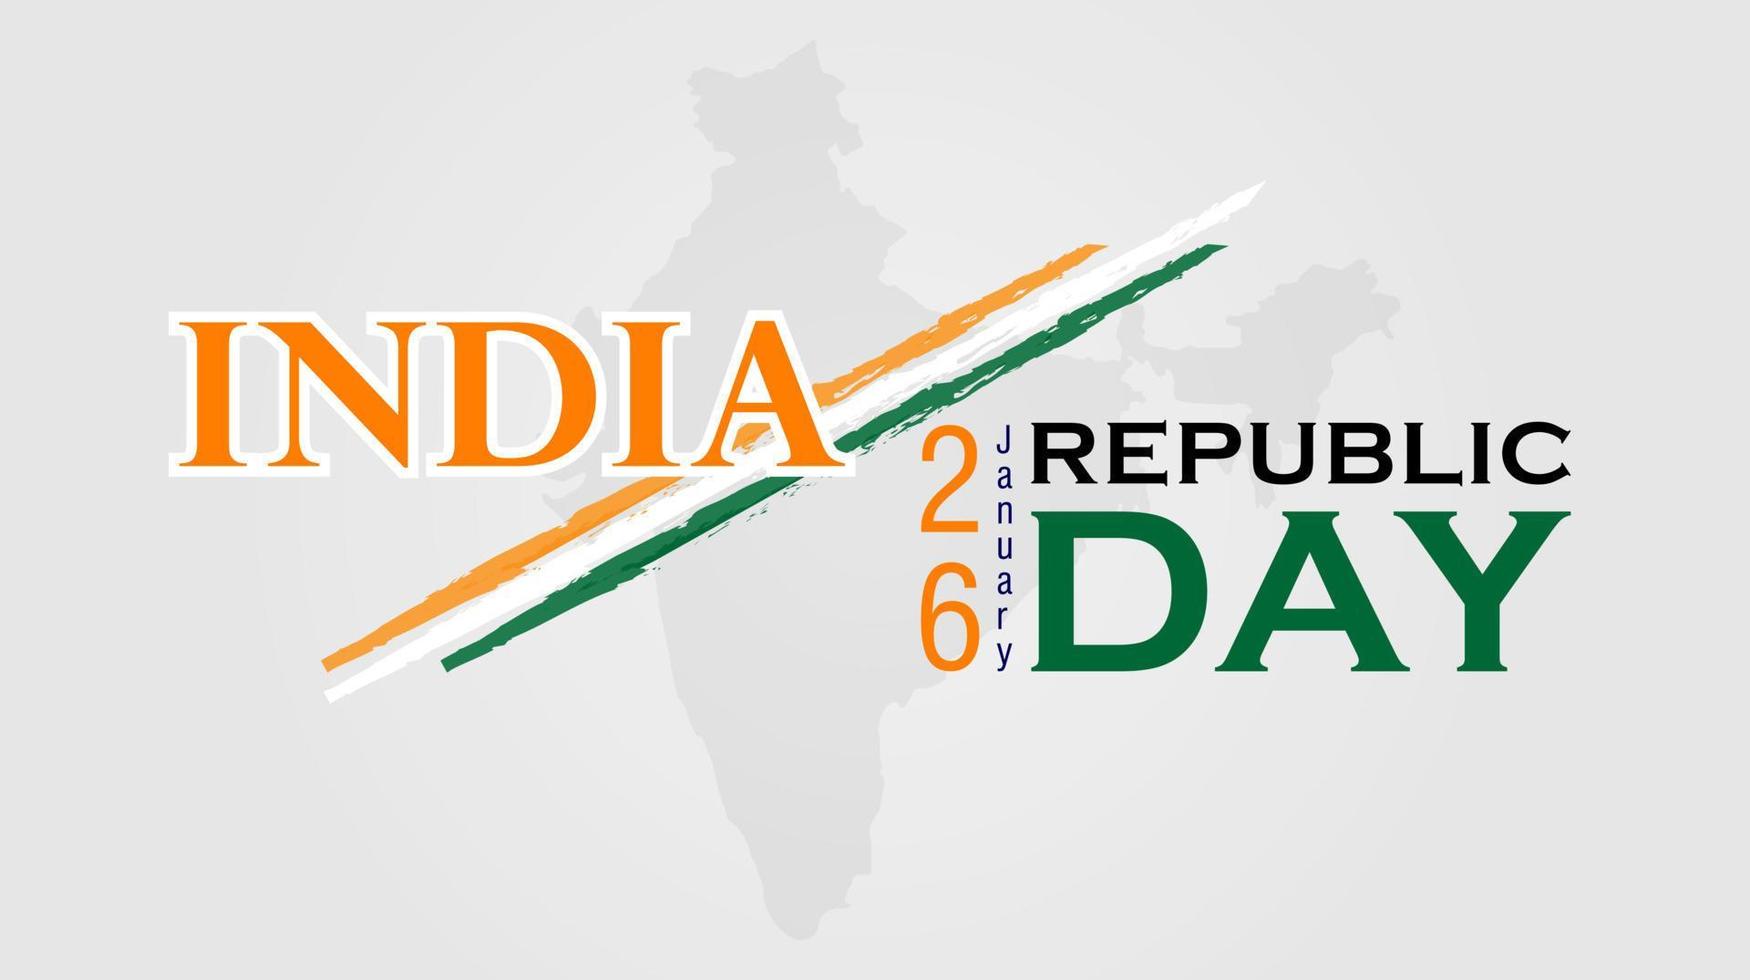 repubblica giorno di India celebrazione sfondo. manifesto disposizione. vettore design.